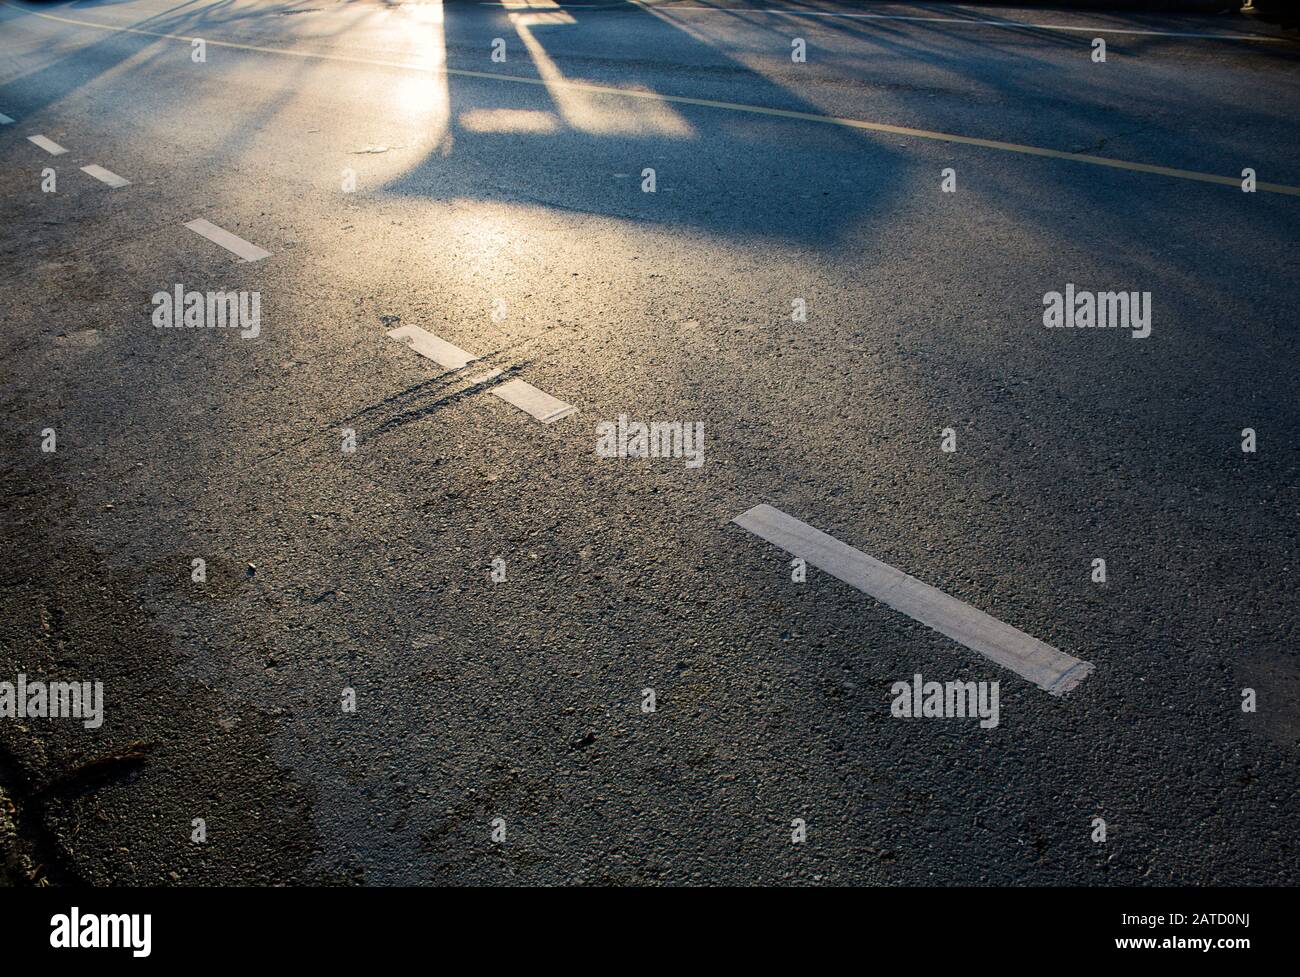 Morgenlicht fällt auf die Asphaltoberfläche einer leeren Straße, mit Schatten, weißen und gelben Fahrbahnmarkierungen und einer von Interesse für Oberflächenfehler. Stockfoto